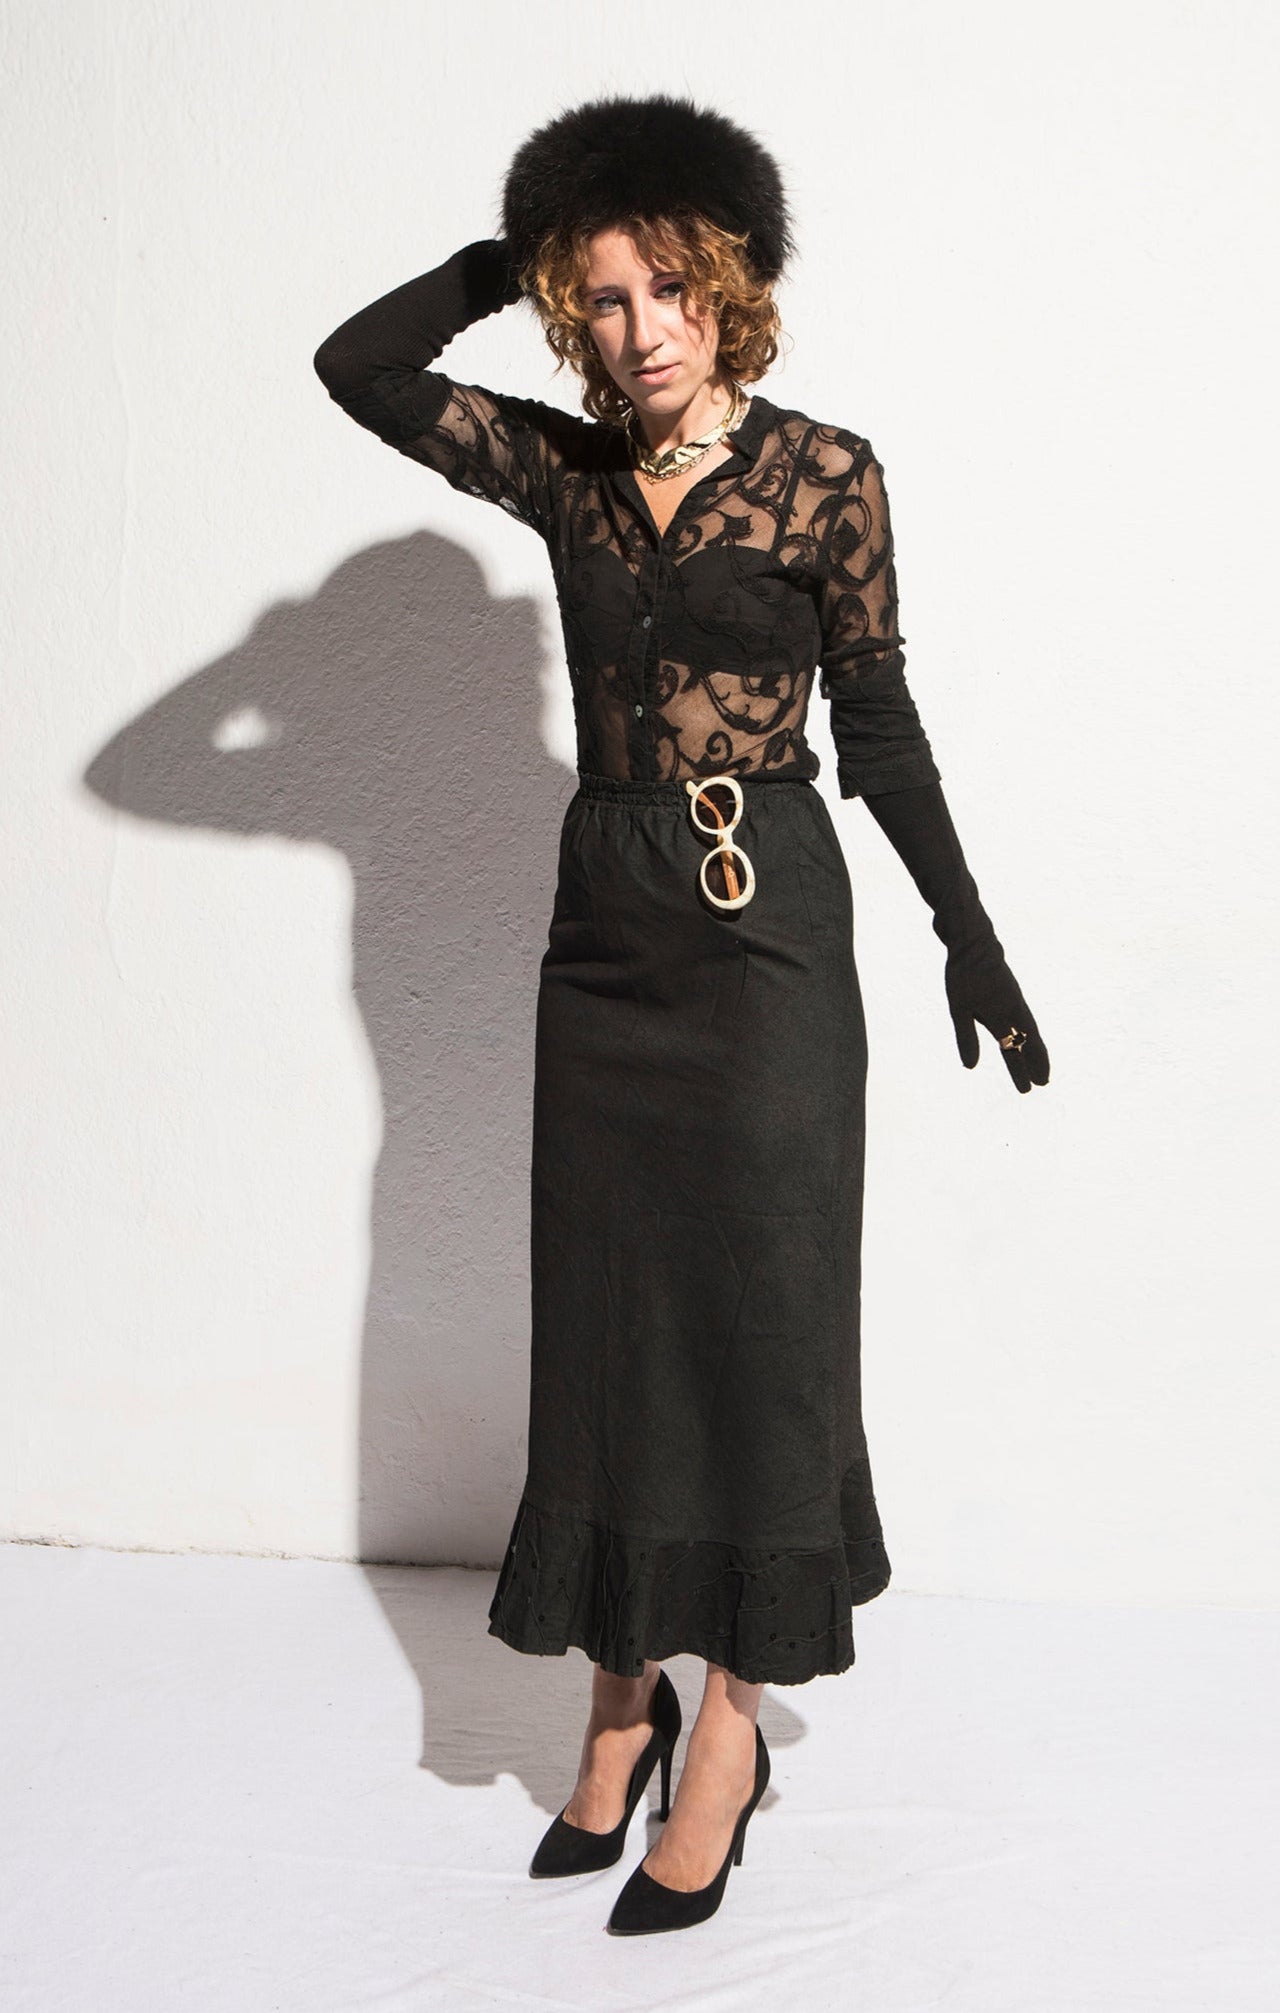 Norma Vintage _sequins denim skirt